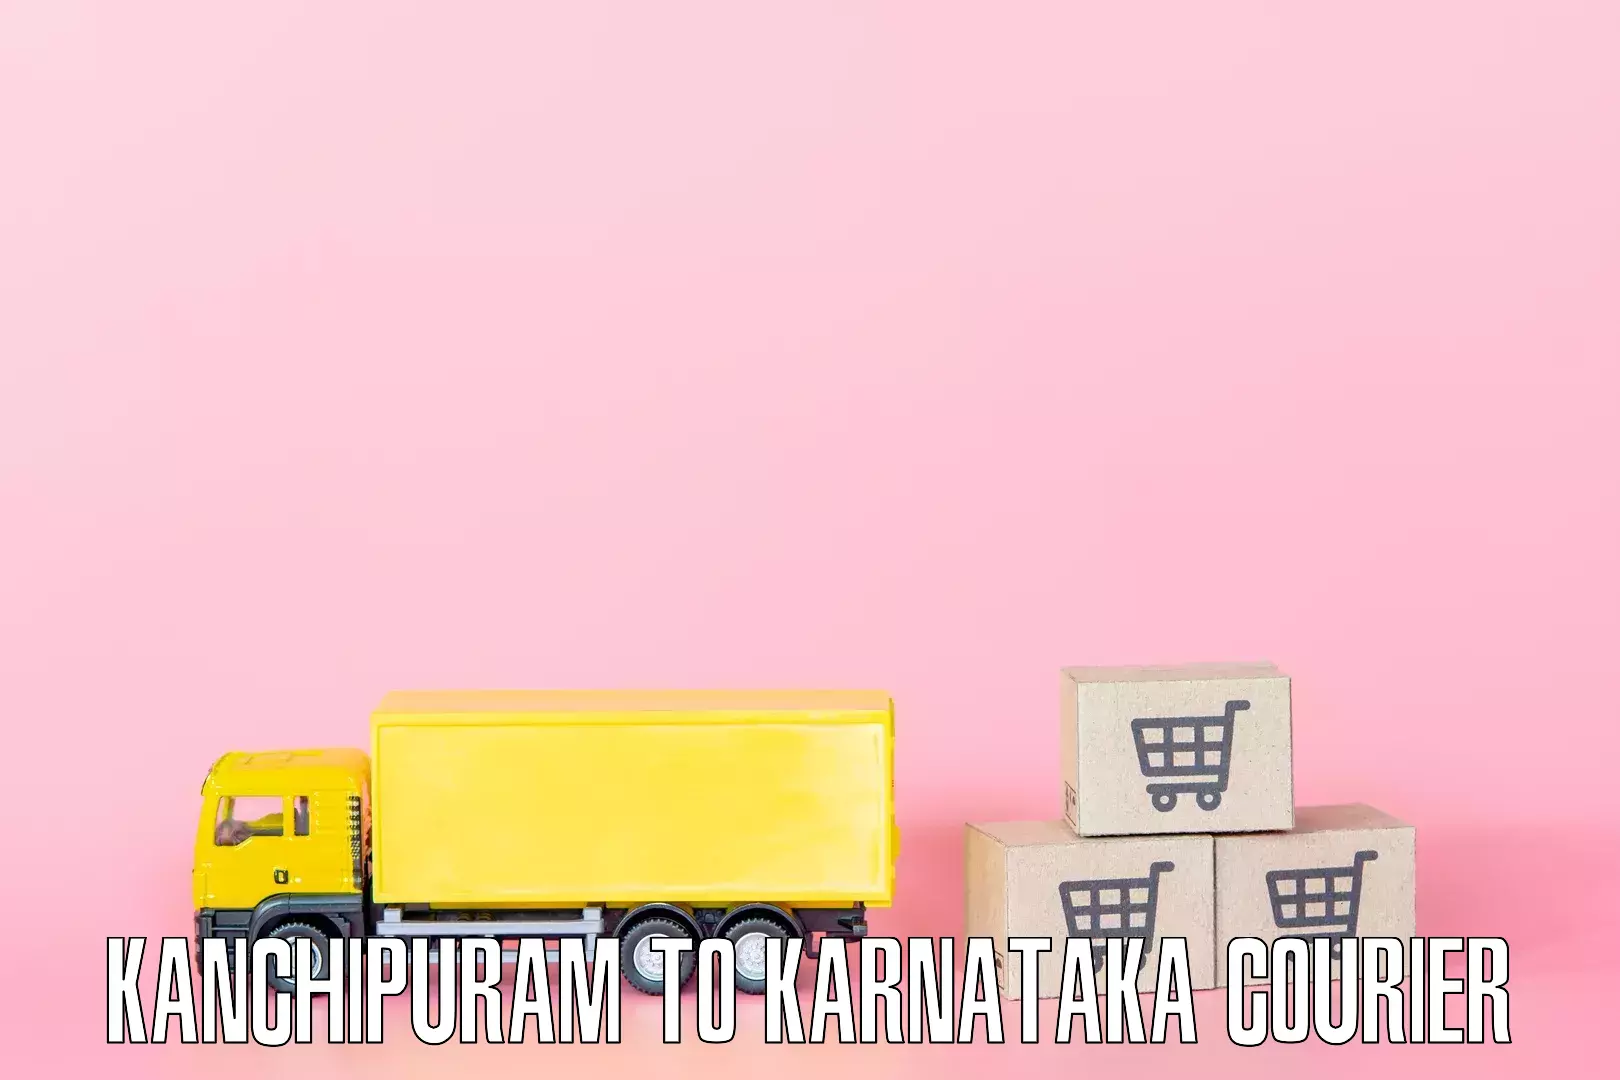 Furniture transport and storage Kanchipuram to Kulshekar